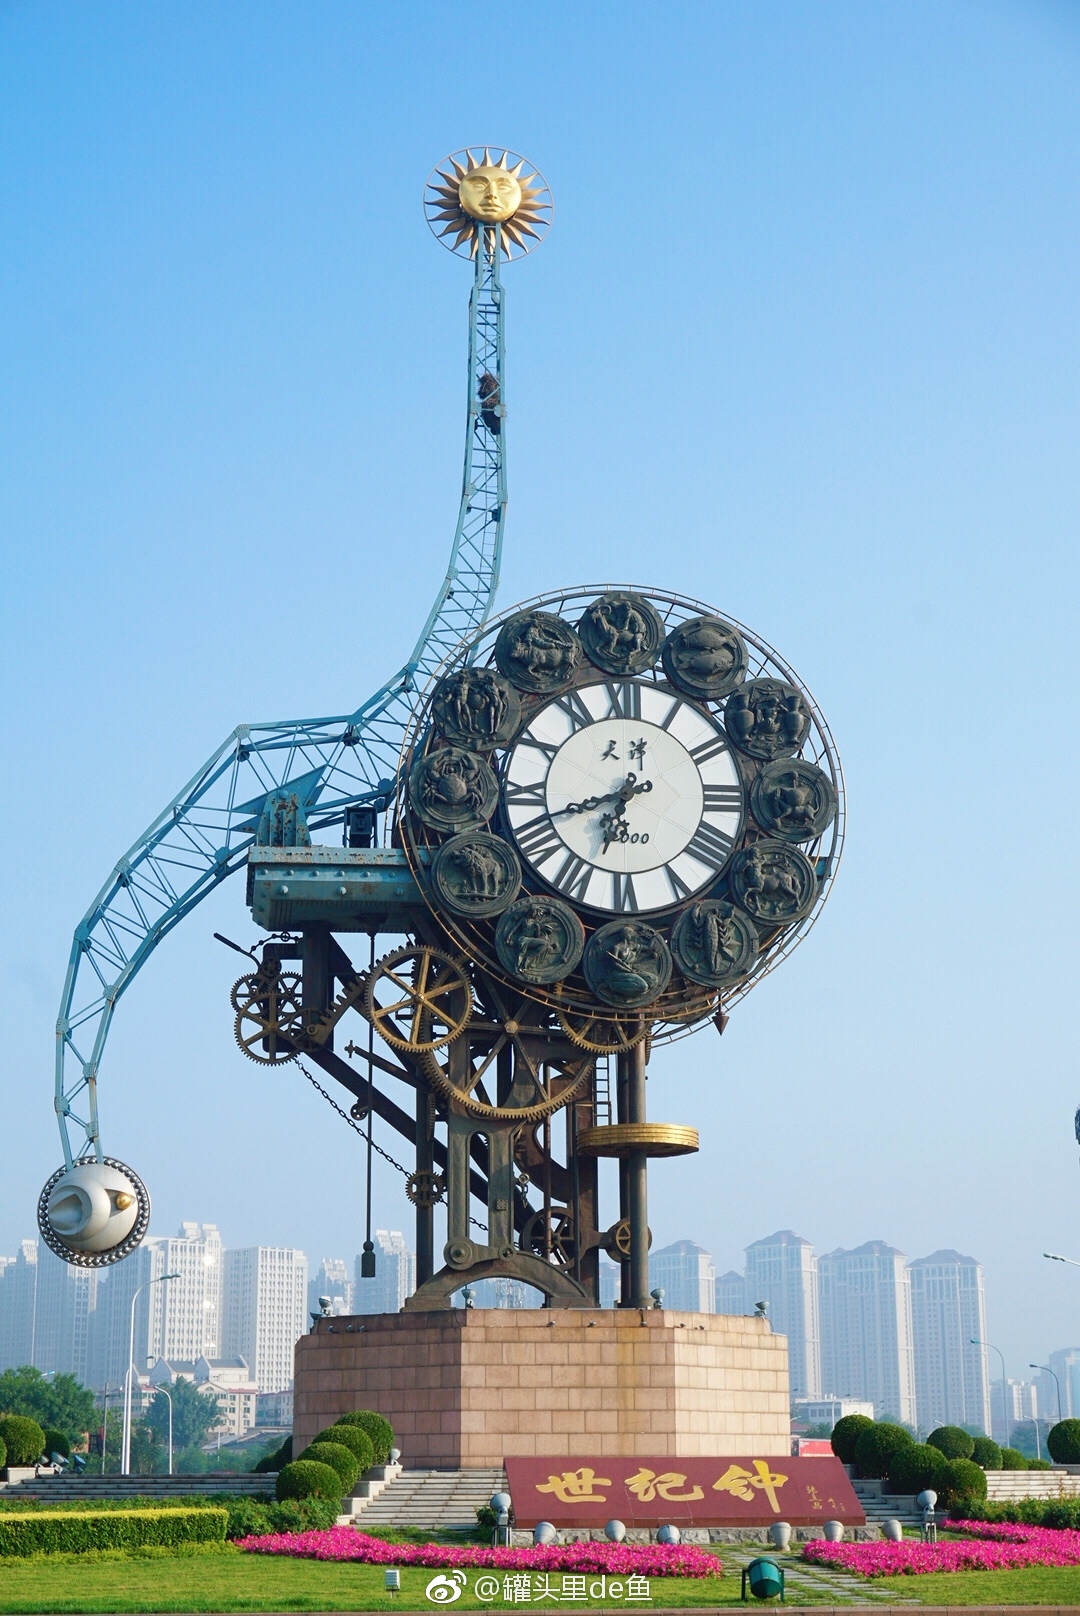 海河丨解放桥丨世纪钟丨津塔丨津湾广场今晨7点整的天津站周边好想